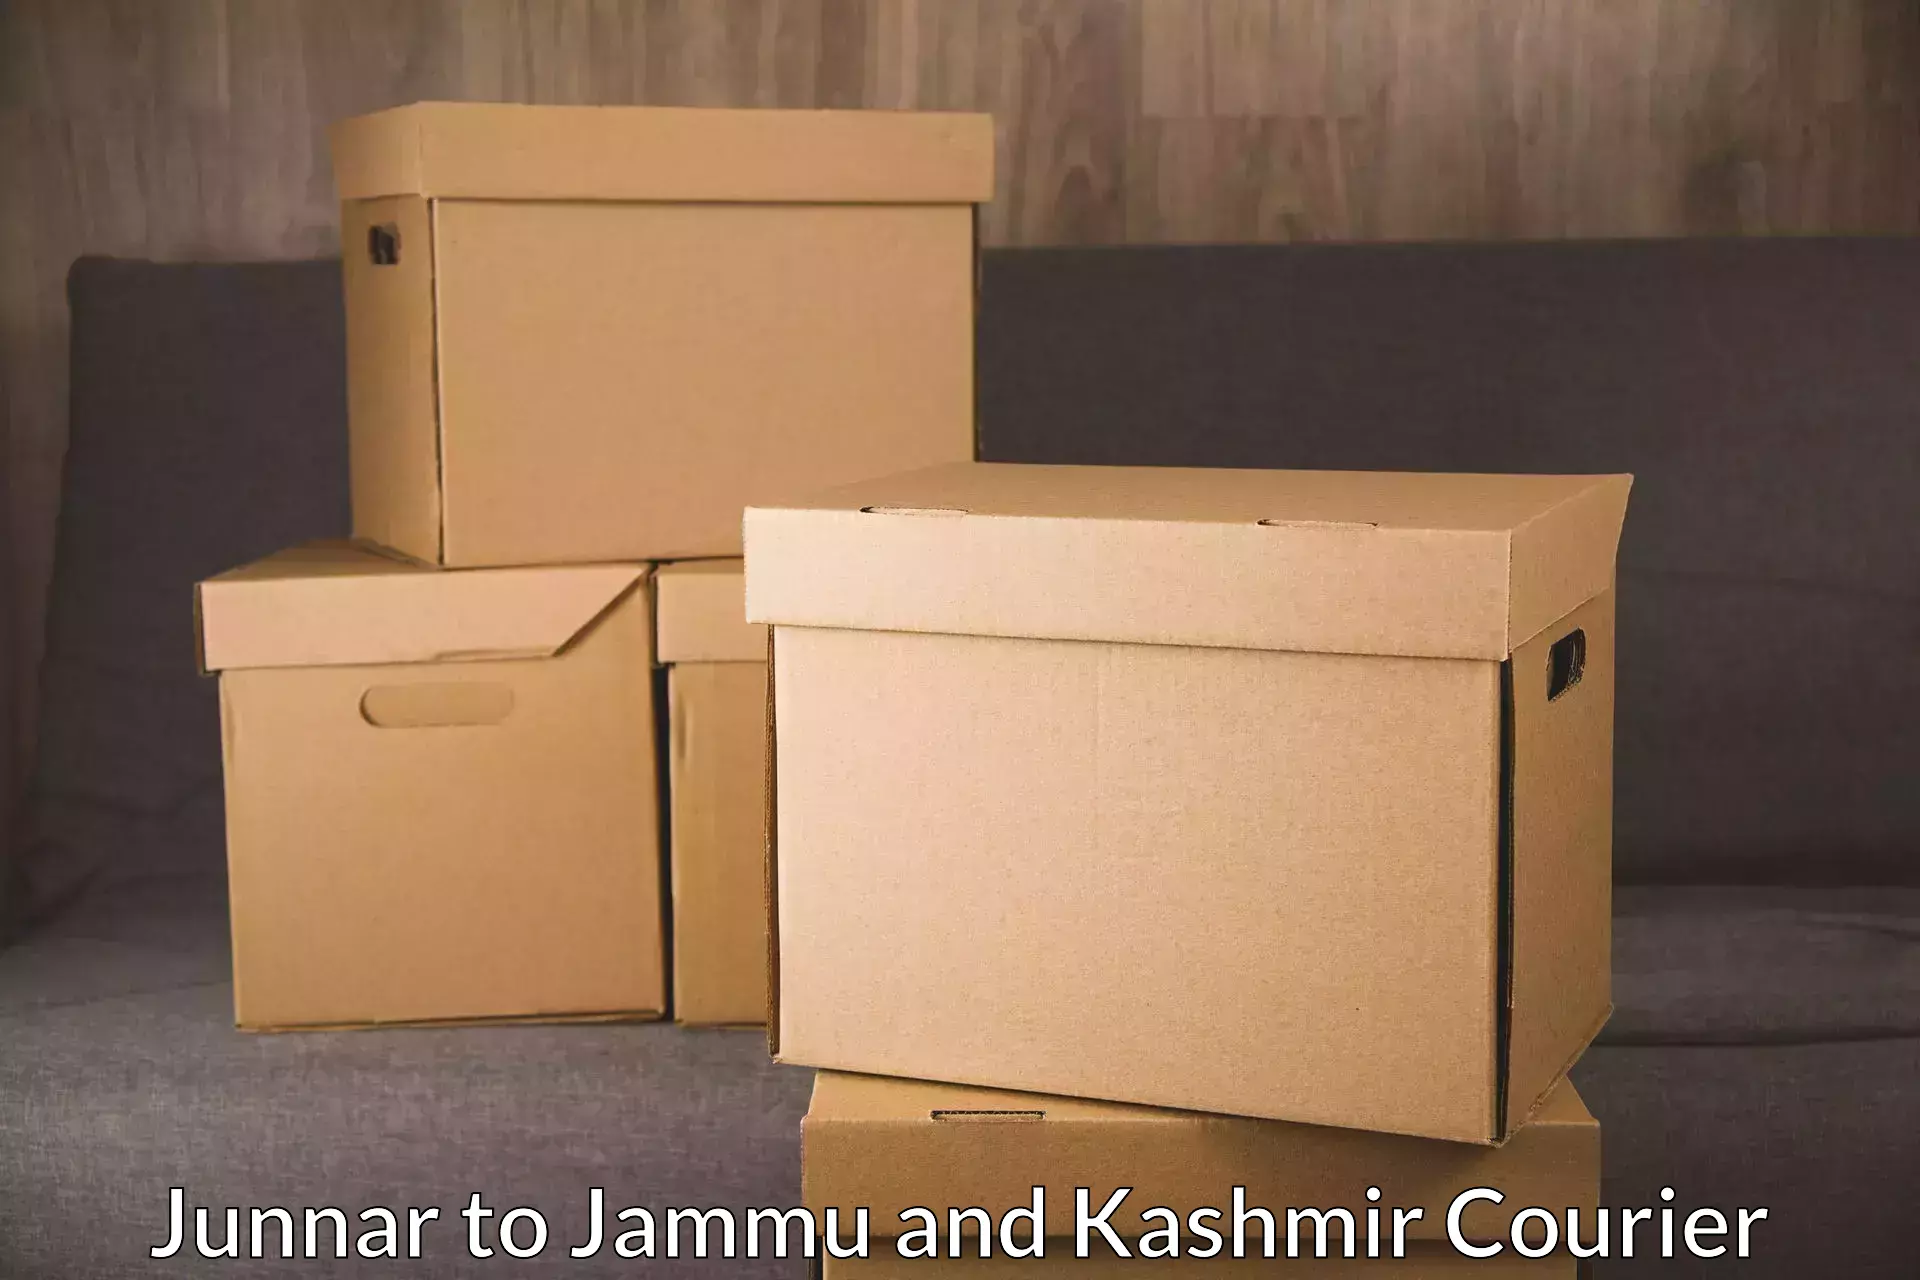 Express mail service Junnar to University of Kashmir Srinagar